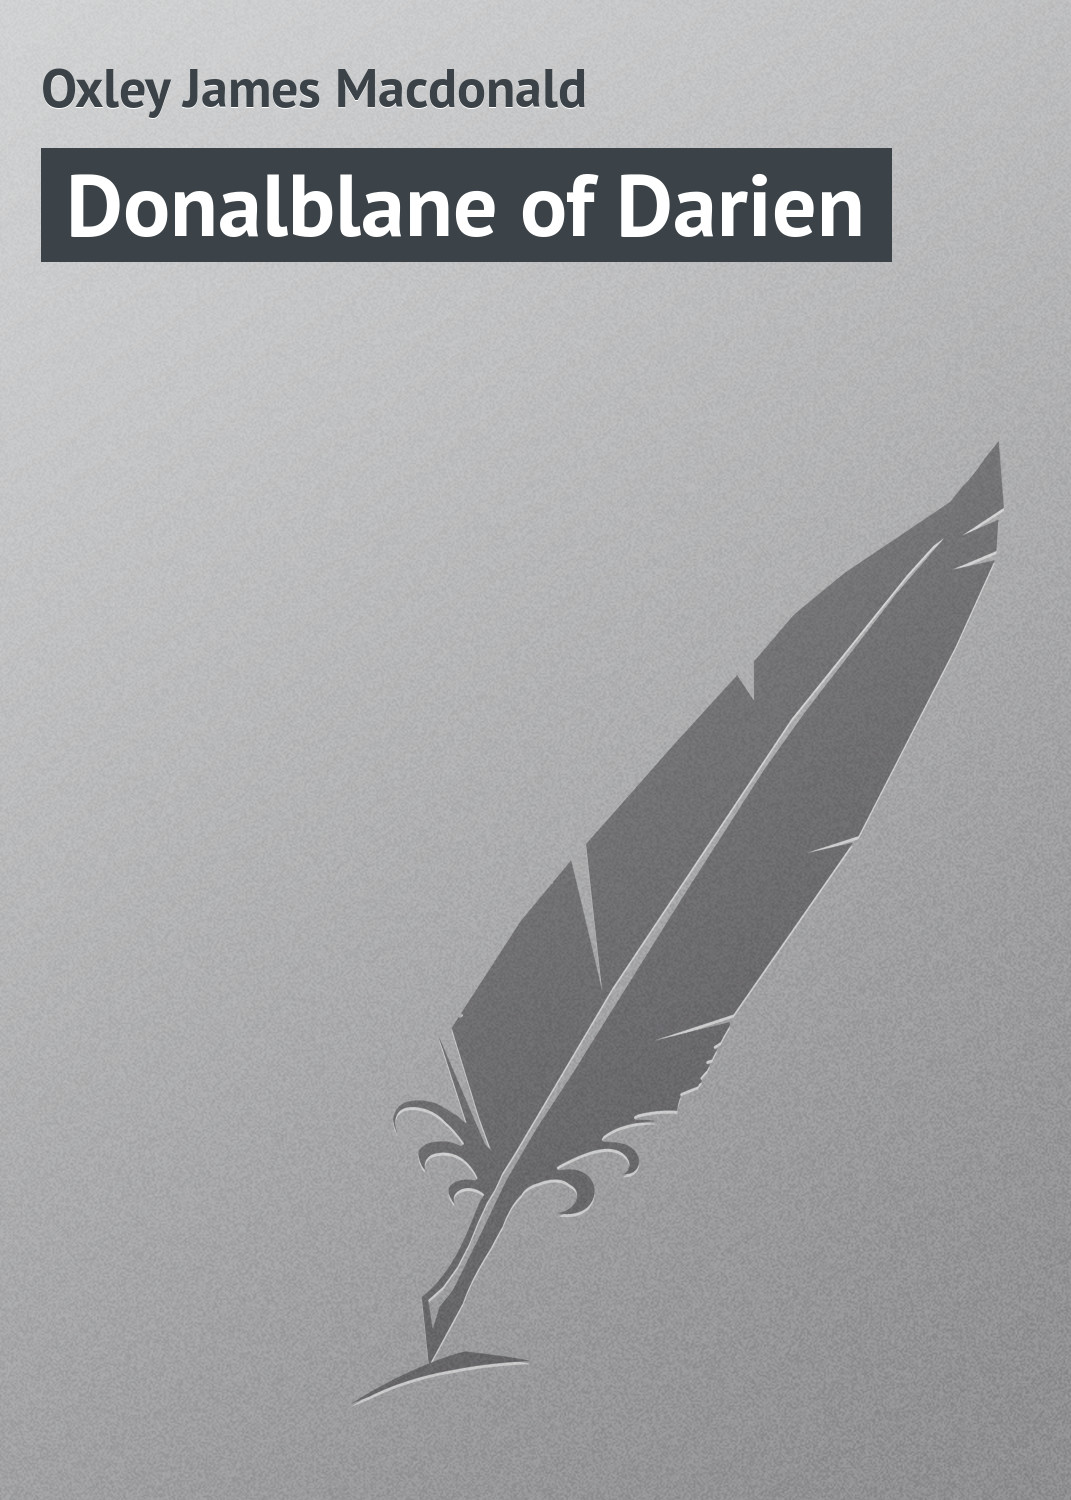 Книга Donalblane of Darien из серии , созданная James Oxley, может относится к жанру Приключения: прочее, Зарубежная классика. Стоимость электронной книги Donalblane of Darien с идентификатором 23165539 составляет 5.99 руб.